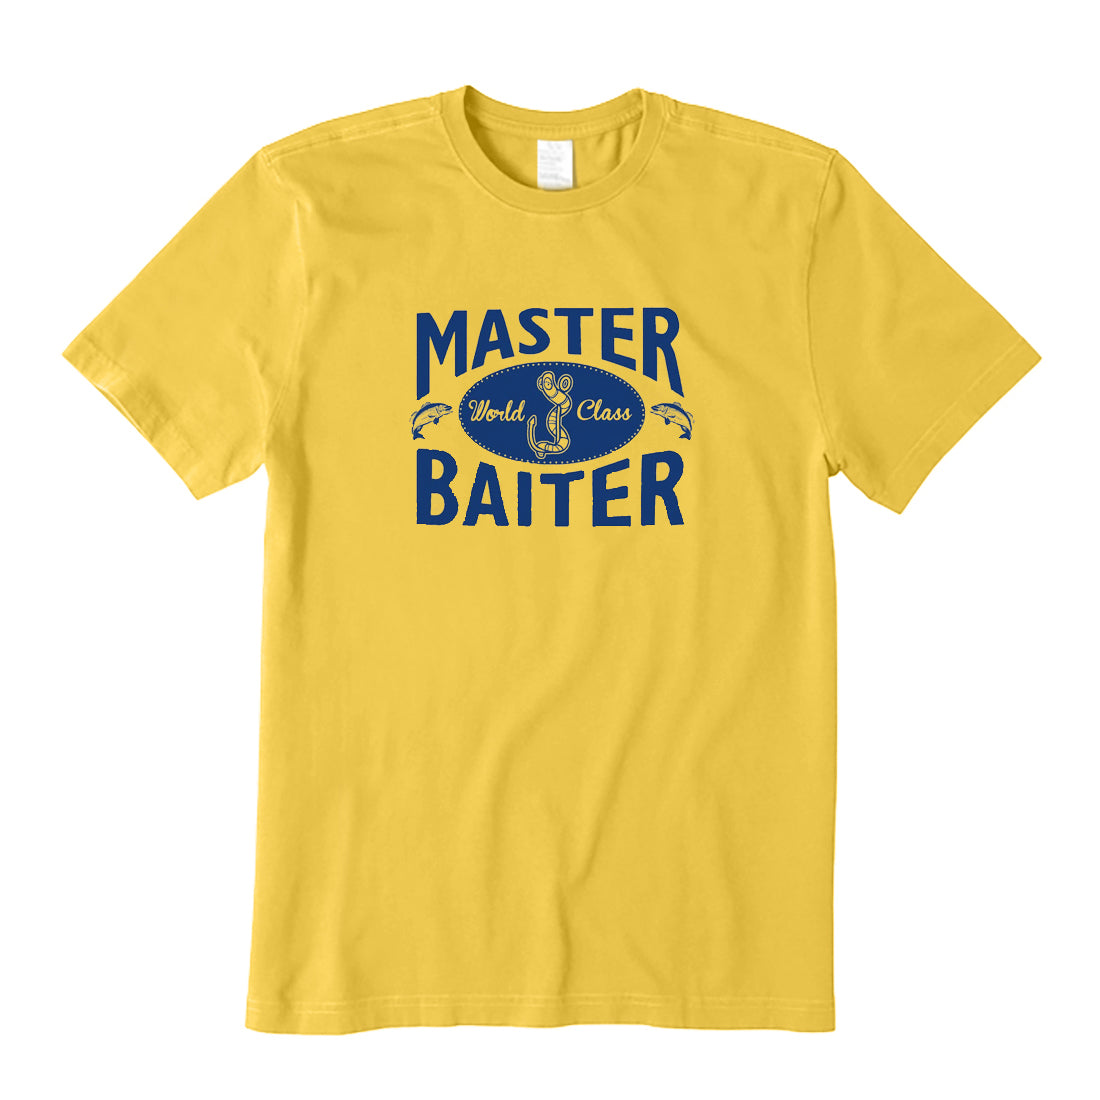 World Class Master Baiter T-Shirt